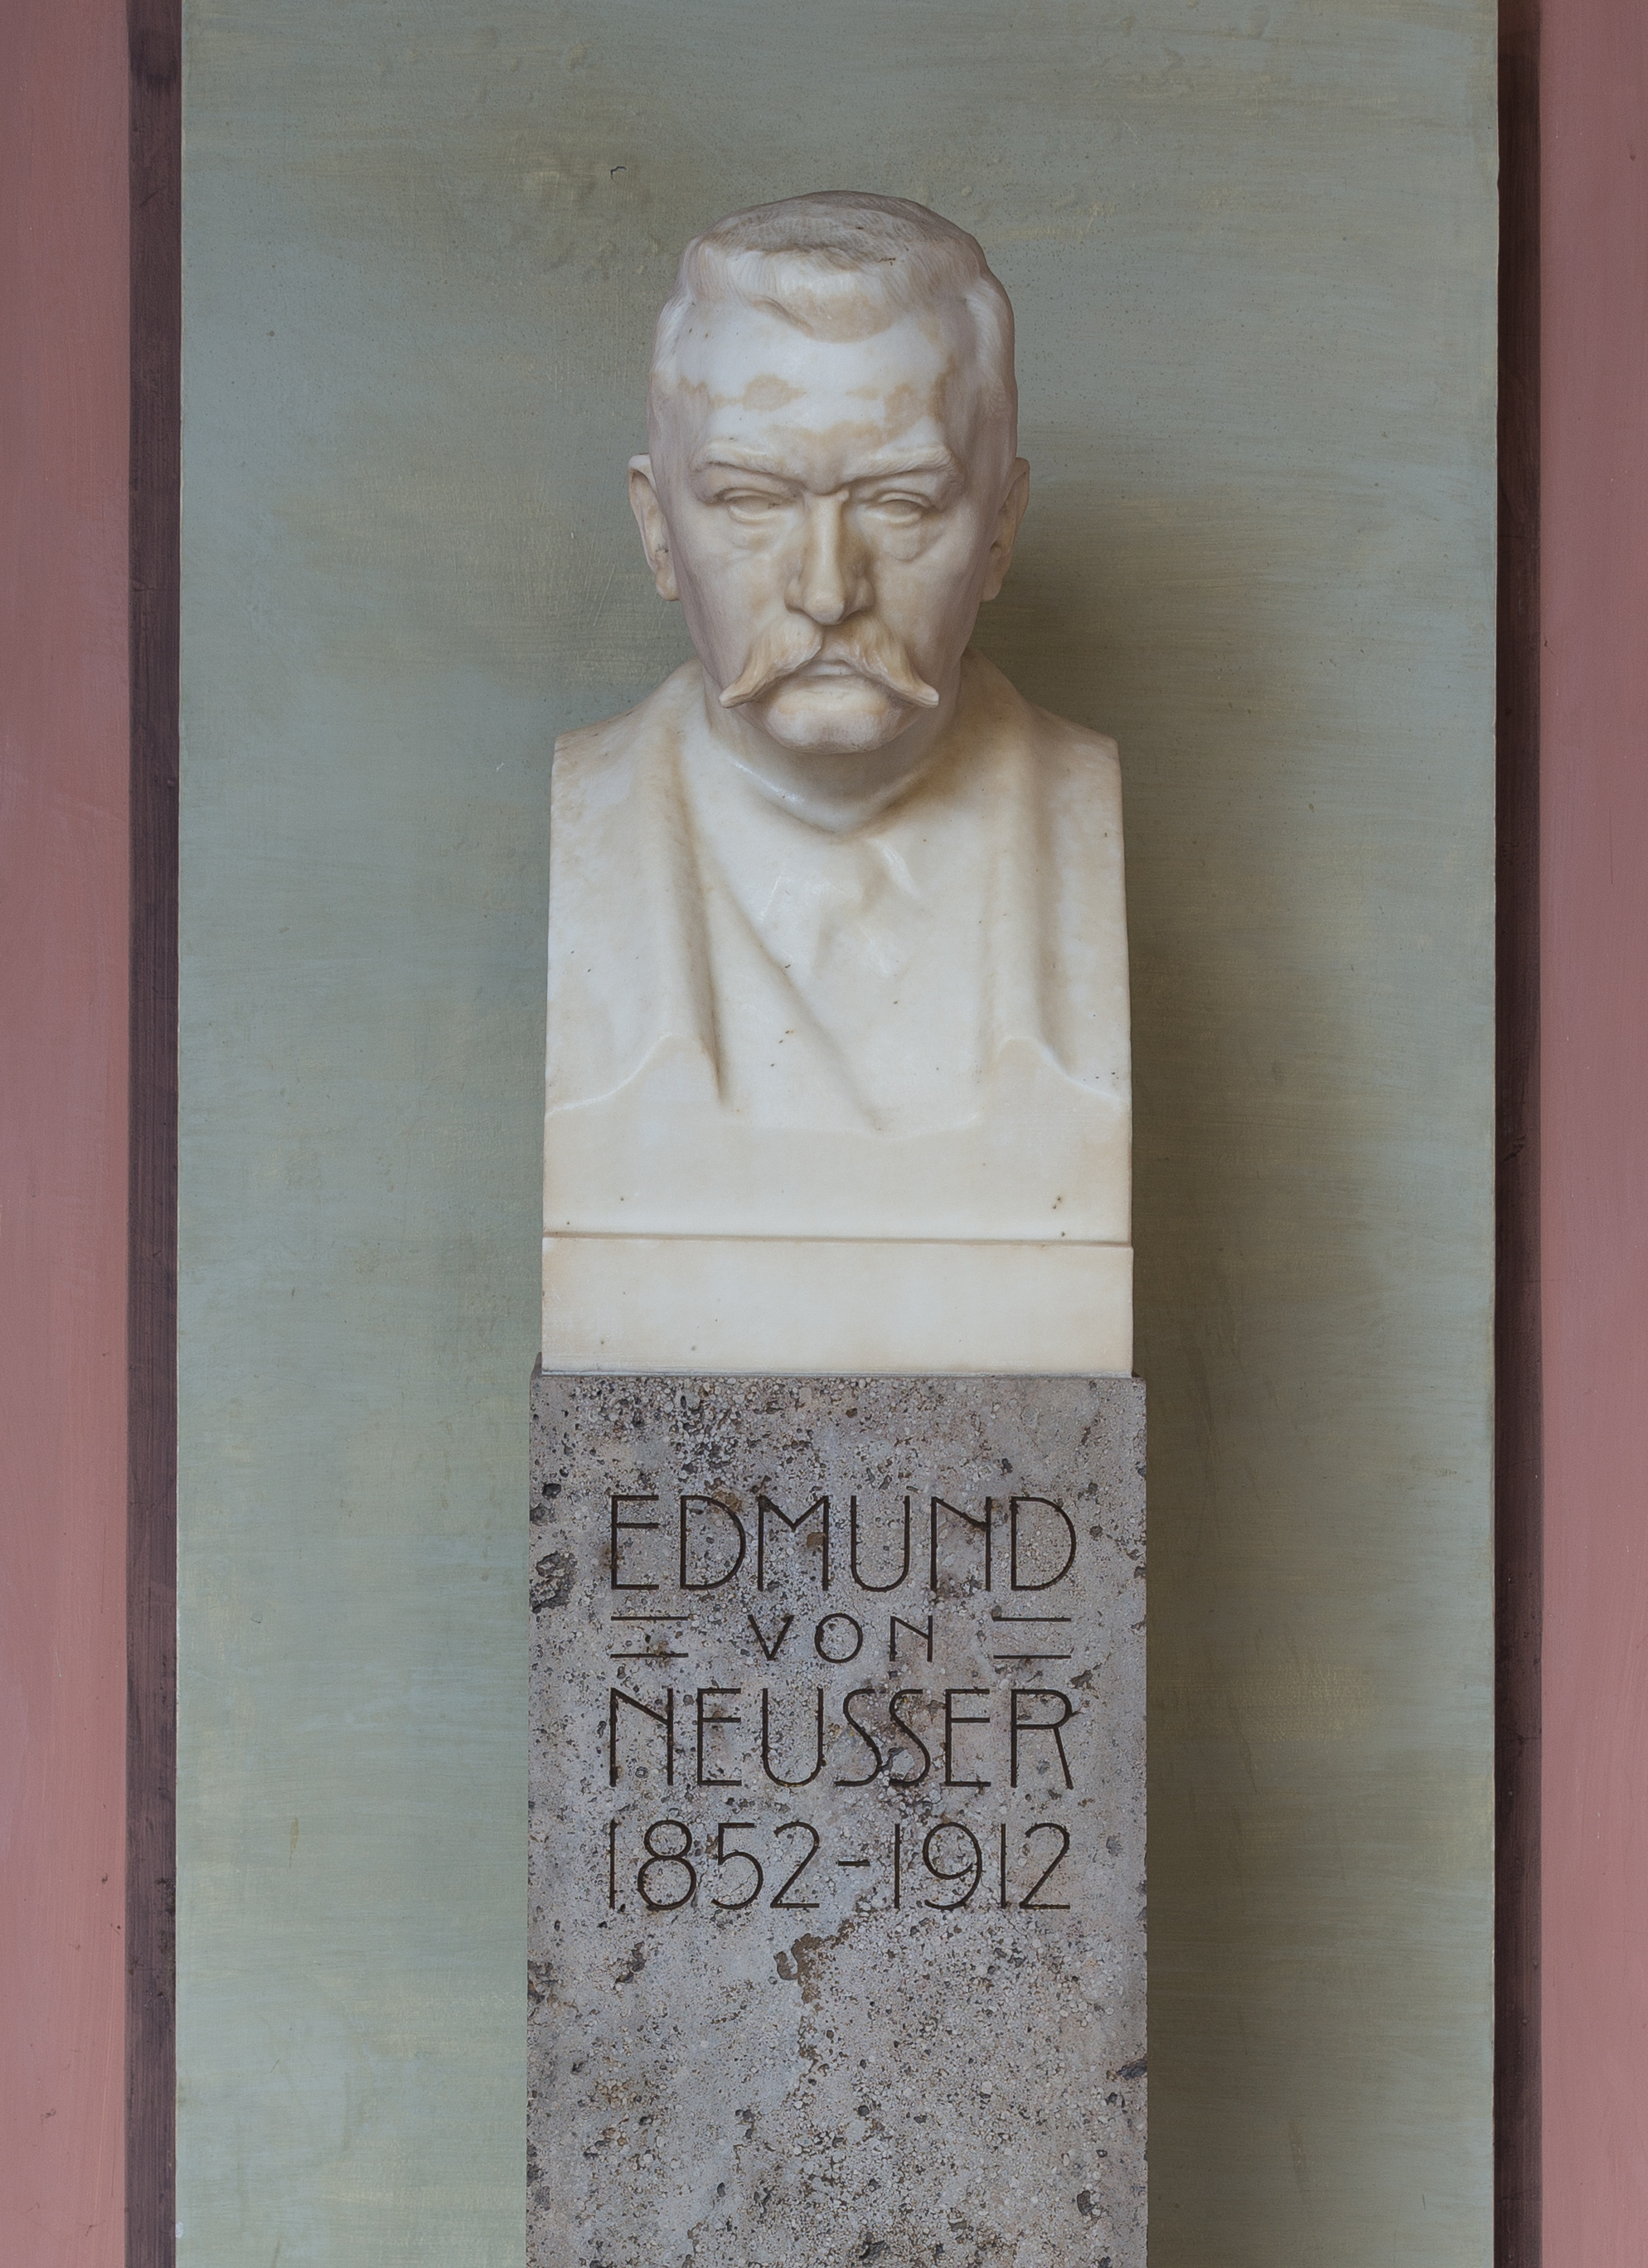 Edmund von Neusser (1852-1912), Nr. 74, bust (marble) in the Arkadenhof of the University of Vienna-1333